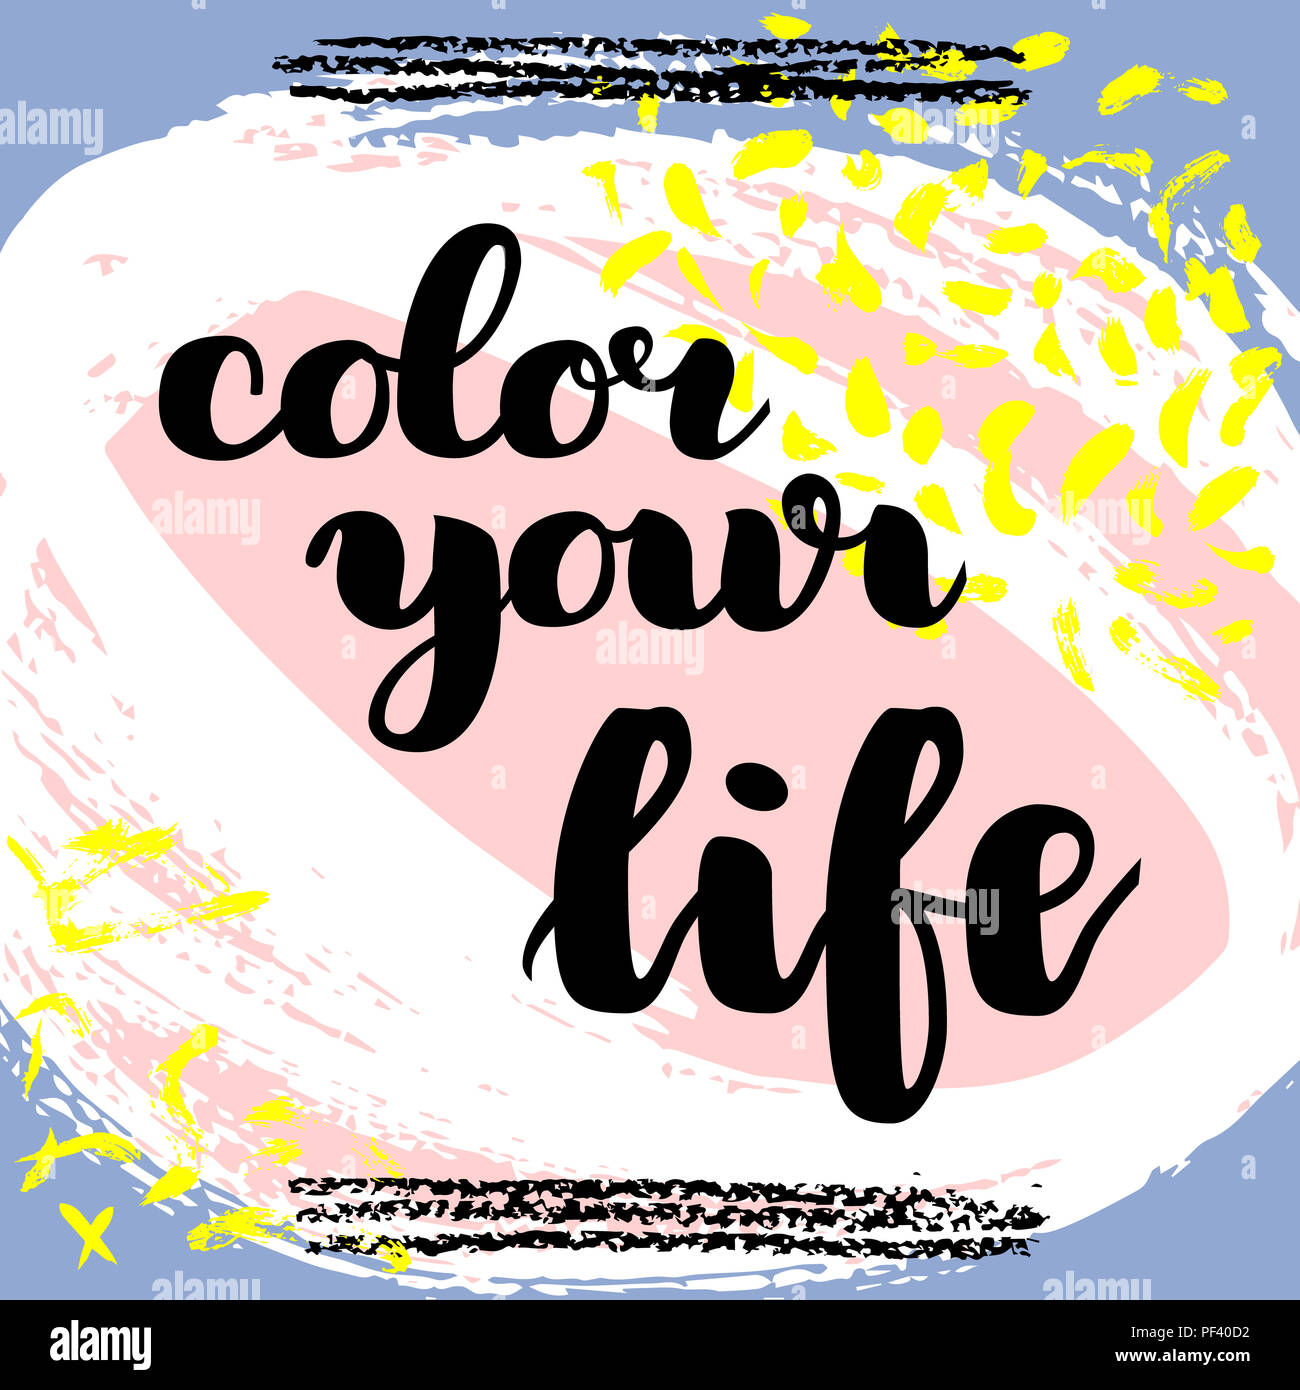 Colora la tua vita. disegnati a mano lettering spazzola su sfondo colorato. Preventivo motivazionale per cartolina, social media, pronto per l'uso. Gli sfondi astratti Foto Stock